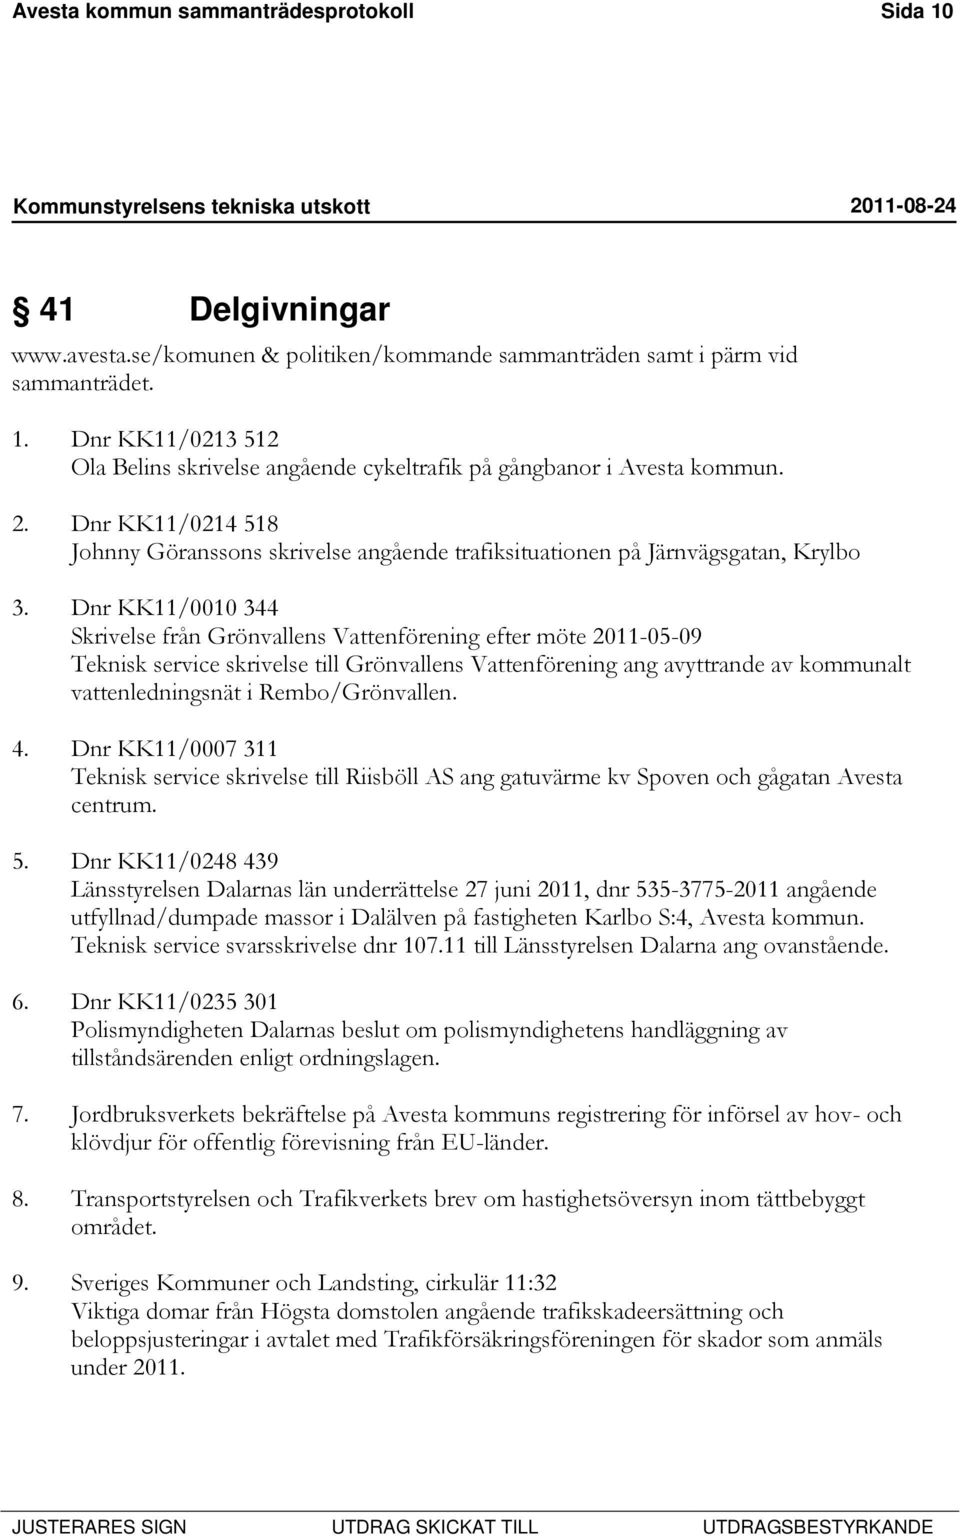 Dnr KK11/0010 344 Skrivelse från Grönvallens Vattenförening efter möte 2011-05-09 Teknisk service skrivelse till Grönvallens Vattenförening ang avyttrande av kommunalt vattenledningsnät i